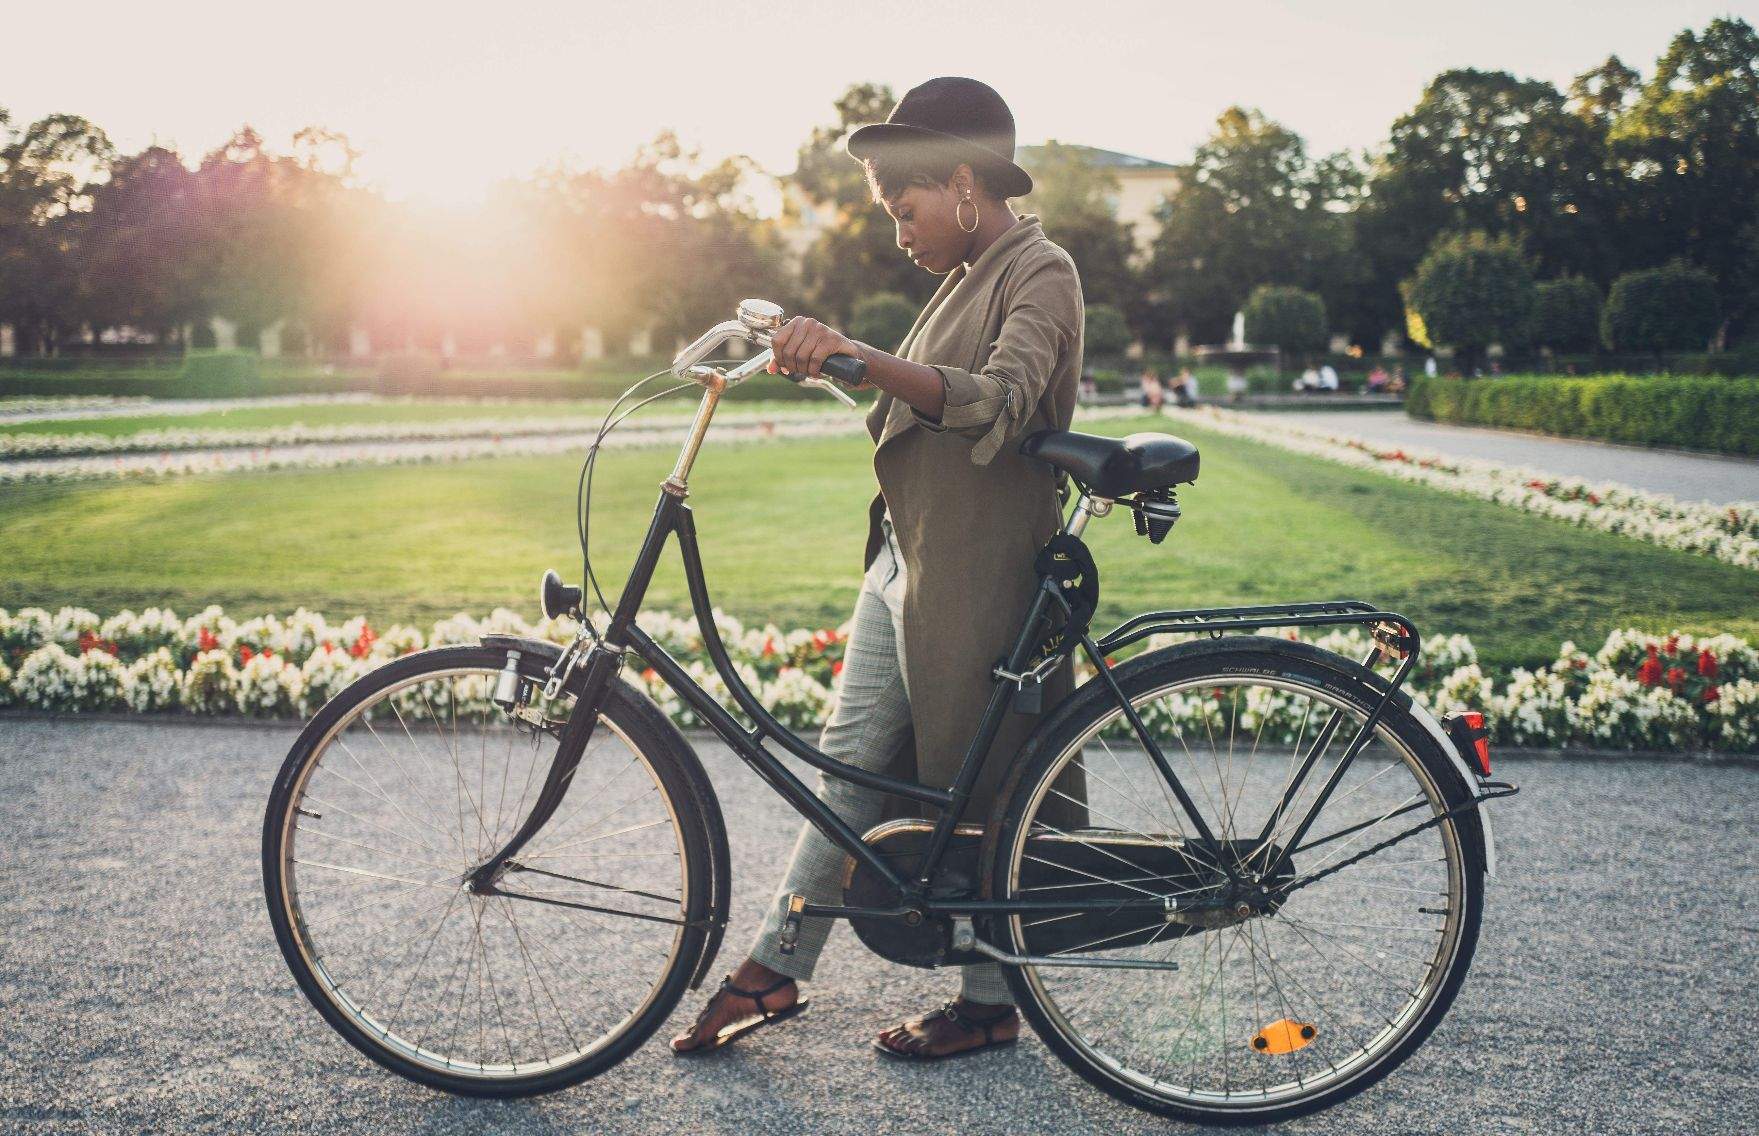 Das Bild zeigt eine Person, die ein klassisches, schwarzes Fahrrad im Hofgarten in München hält. Die Person trägt einen Hut, einen langen Mantel, sowie offene Schuhe. Der Hintergrund zeigt die gepflegte Anlage mit grünem Rasen und blühenden Blumen unter einem klaren Himmel. Sonnenlicht durchflutet die Portraitaufnahme und erzeugt eine warme und einladende Atmosphäre. Aufgenommen vom Heidelberger Fotograf Simon Fritz.